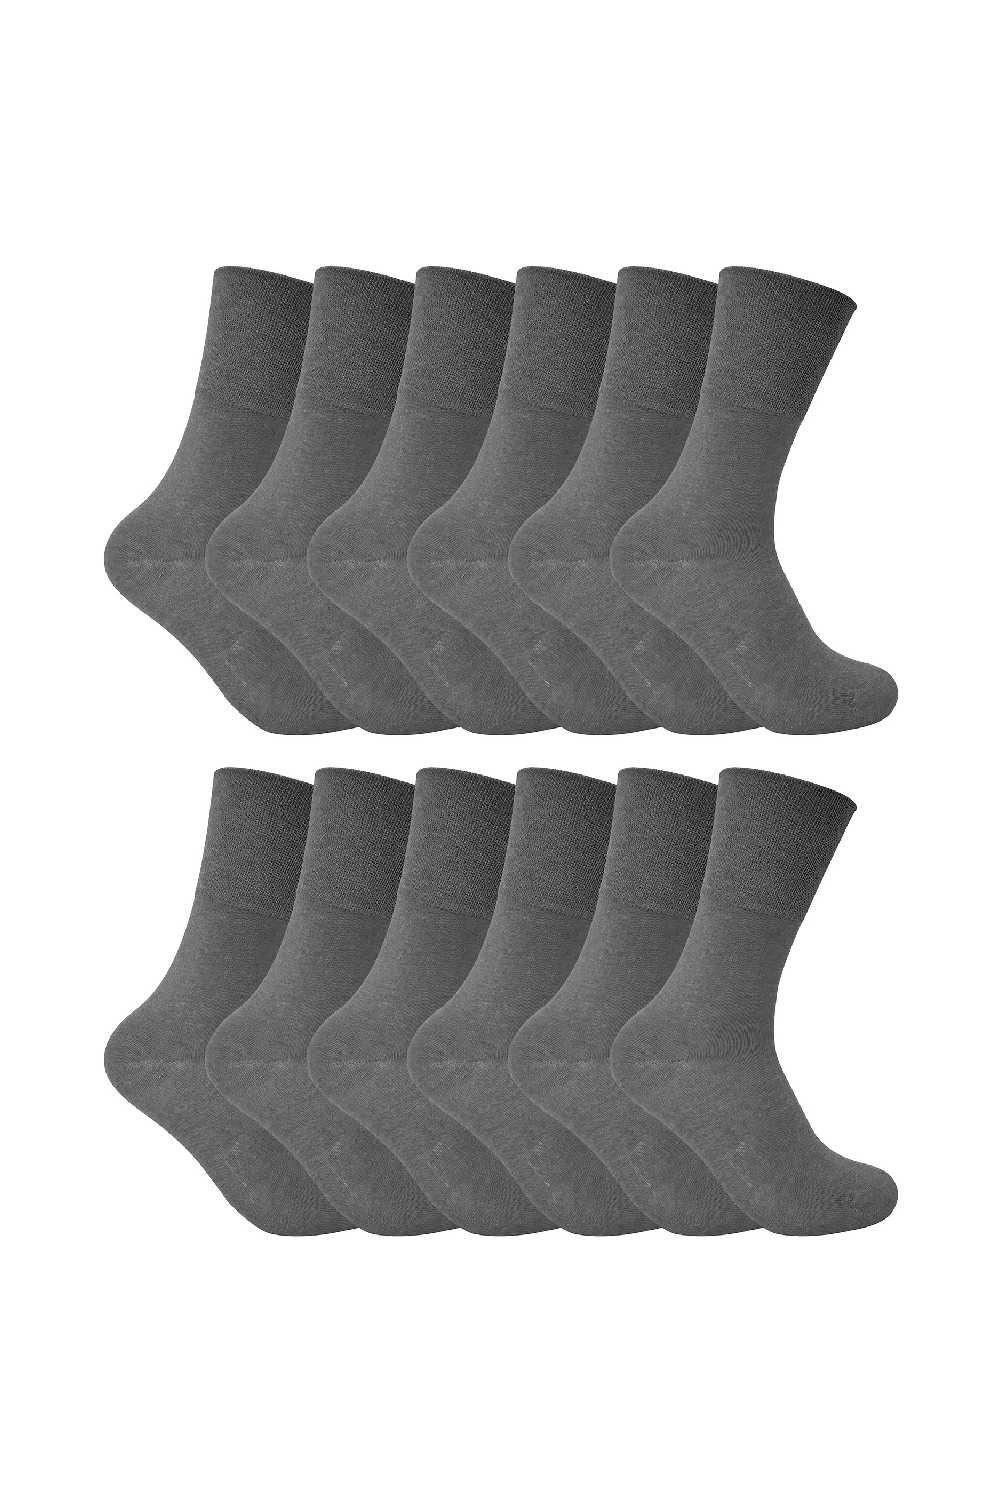 12 Pack Diabetic Soft Top Thermal Socks for Poor Circulation